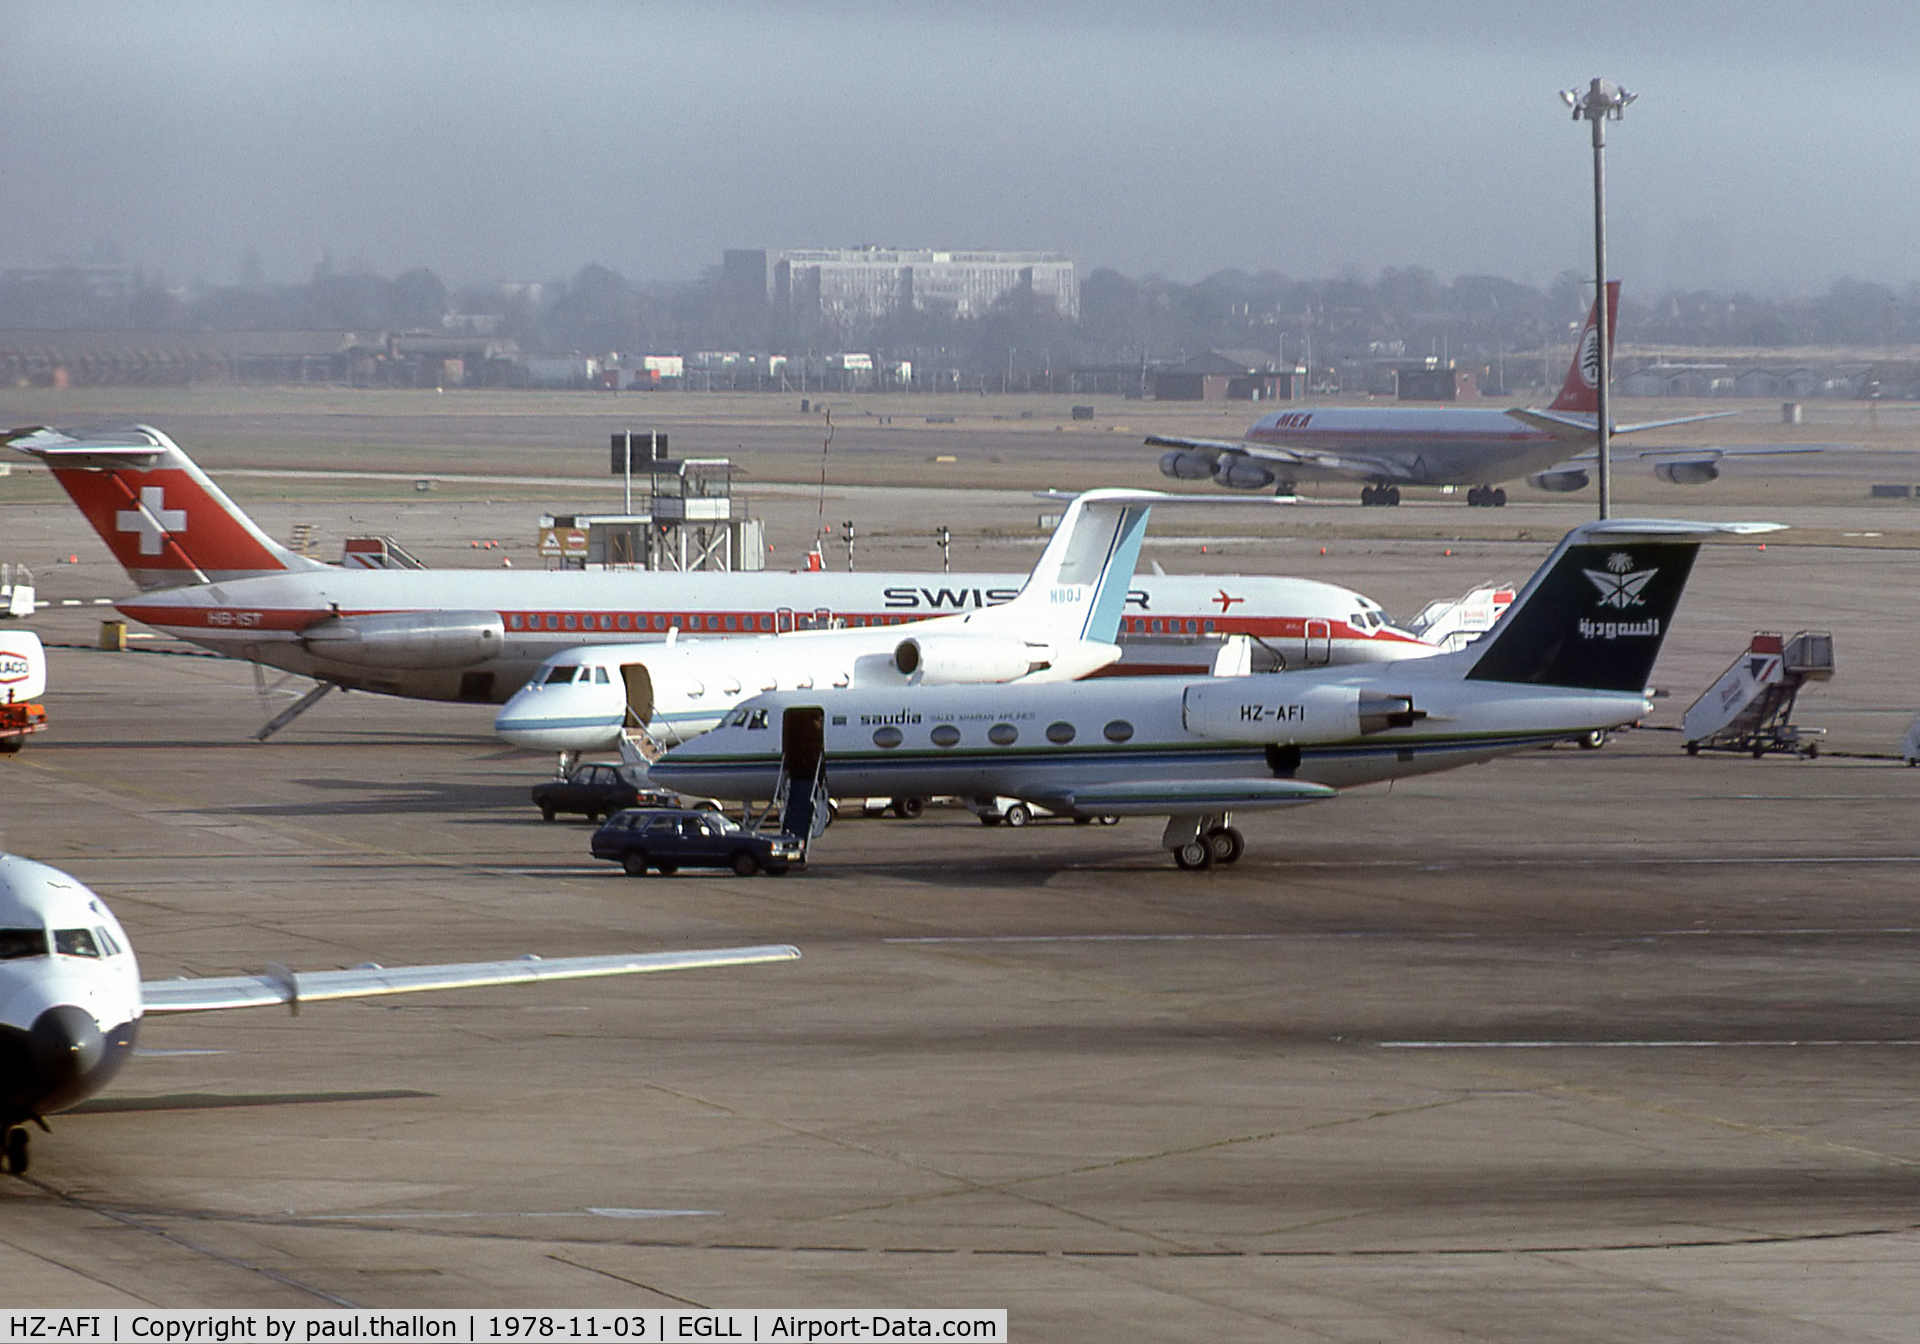 HZ-AFI, 1977 Grumman G-1159 Gulfstream II-TT C/N 201, HZ-AFI at LHR